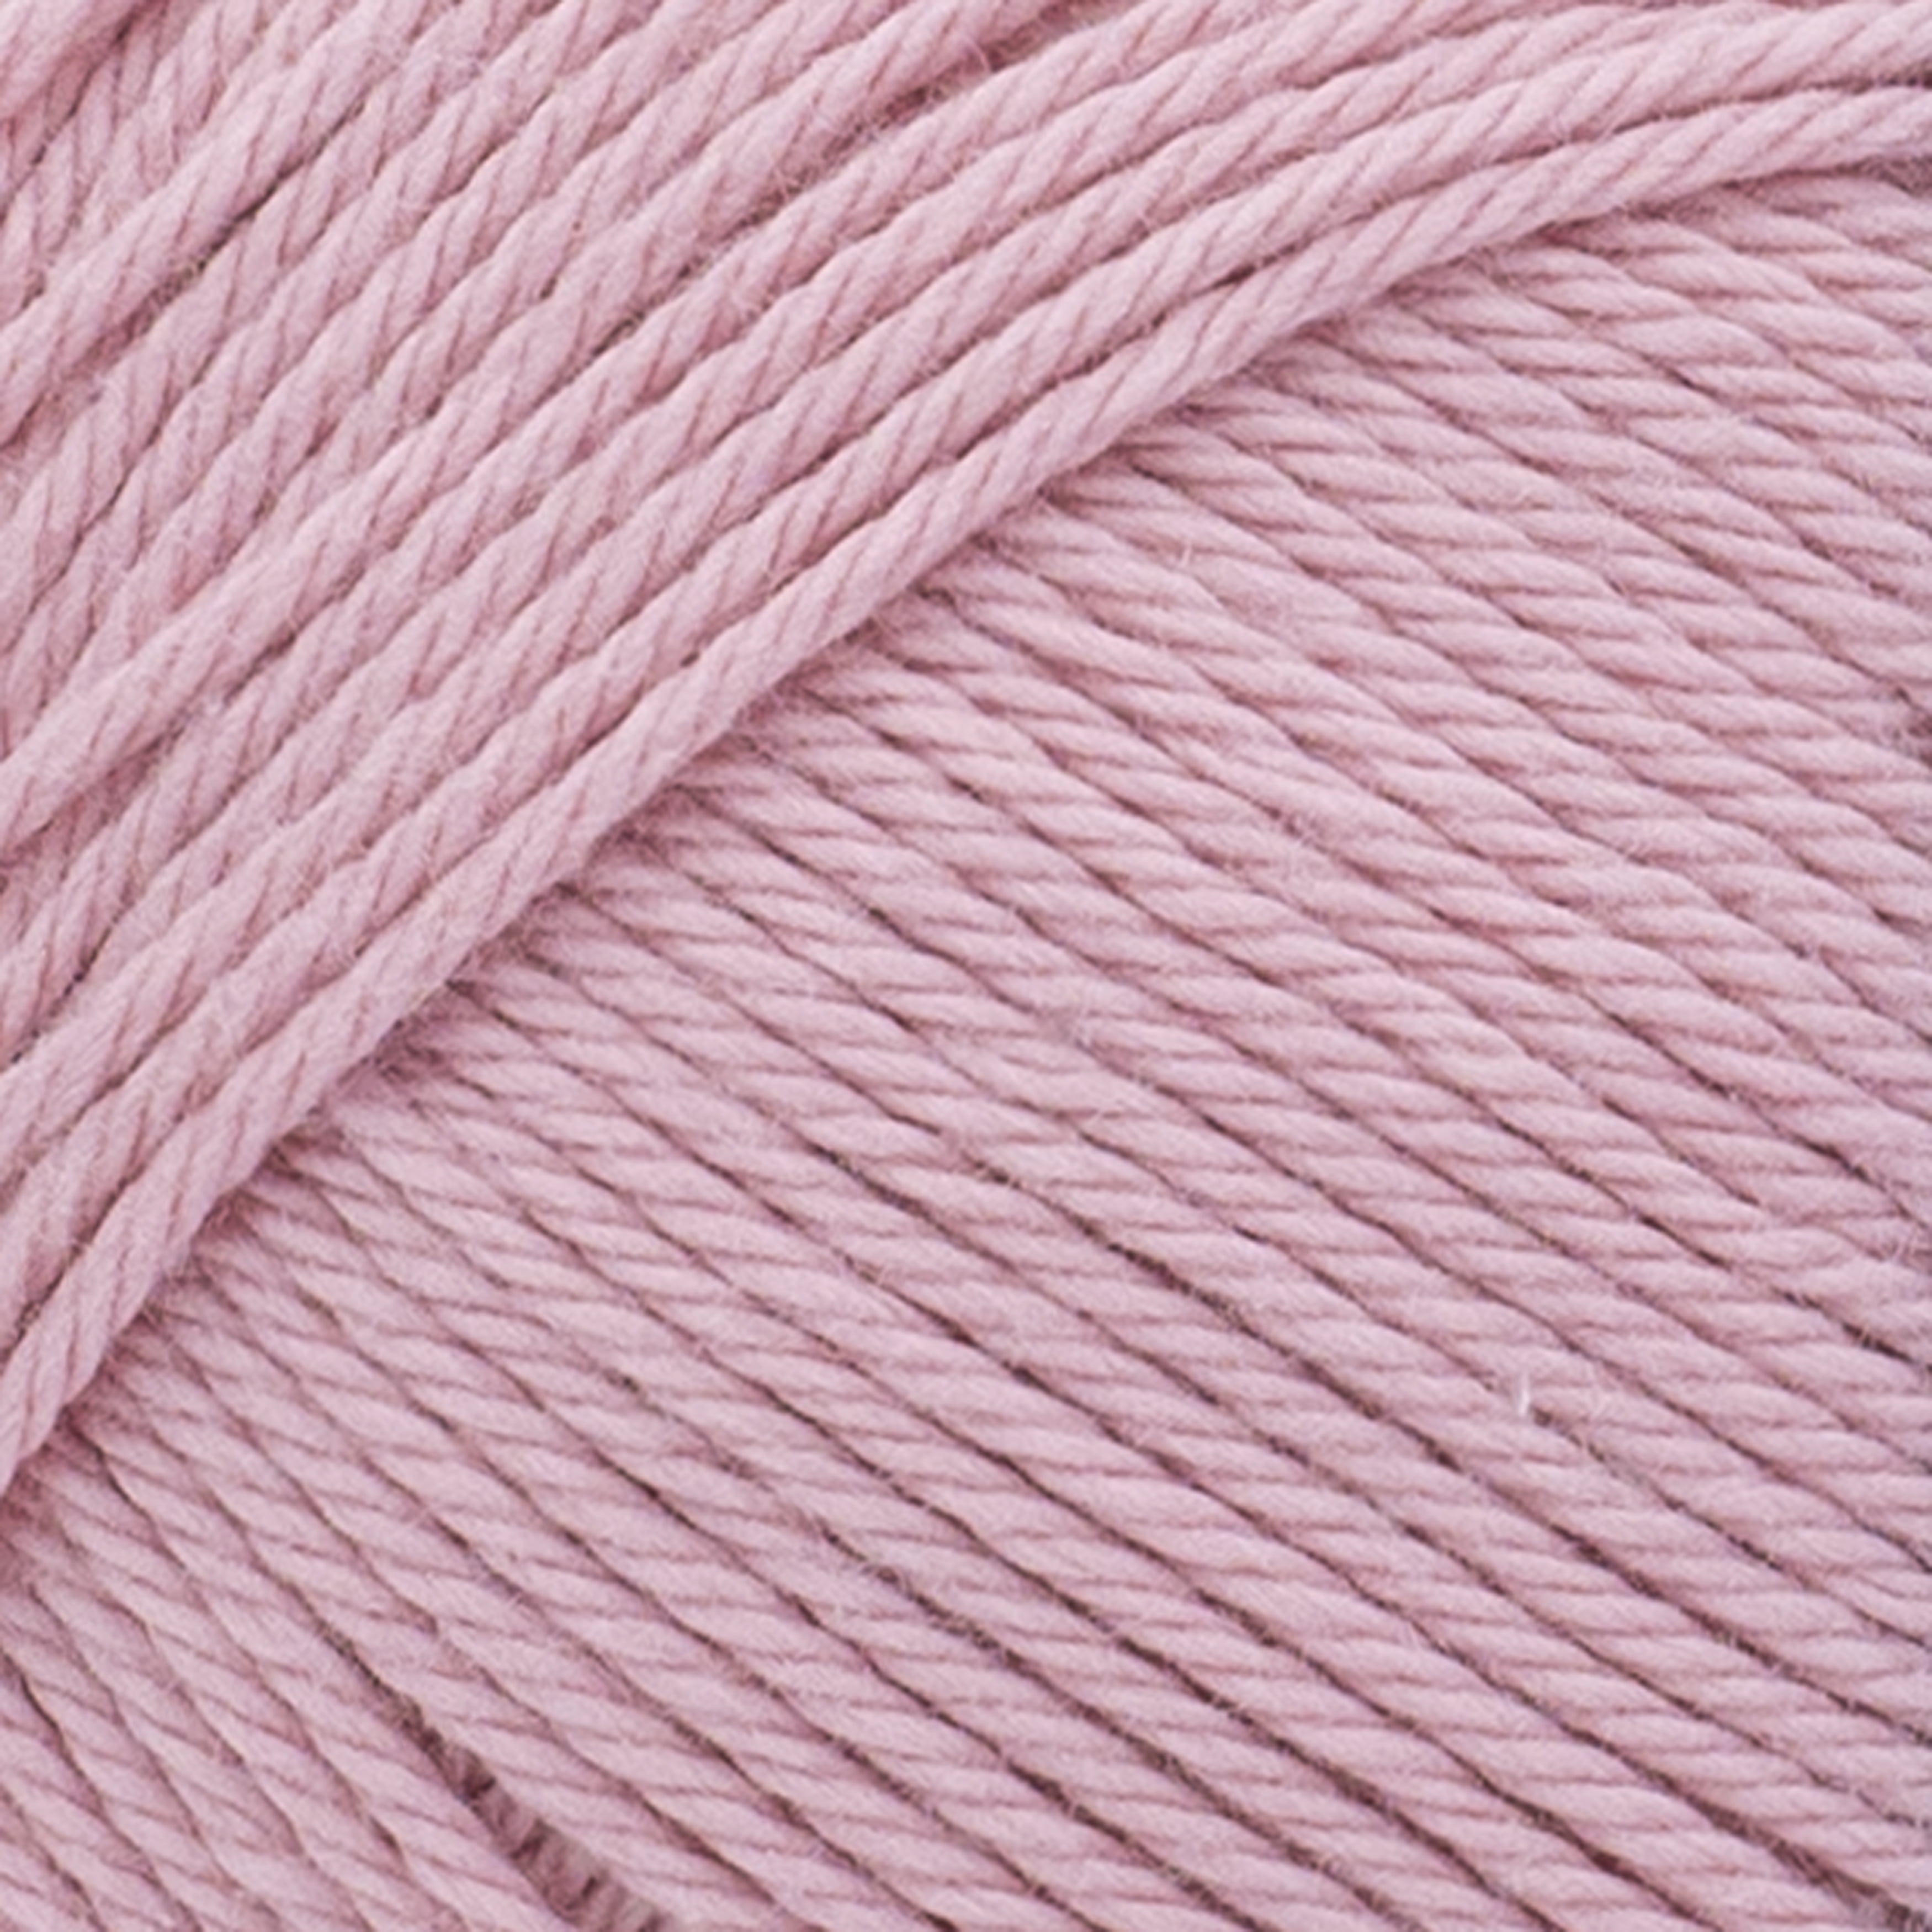 Lion Brand 24/7 Cotton Yarn-pink : Target